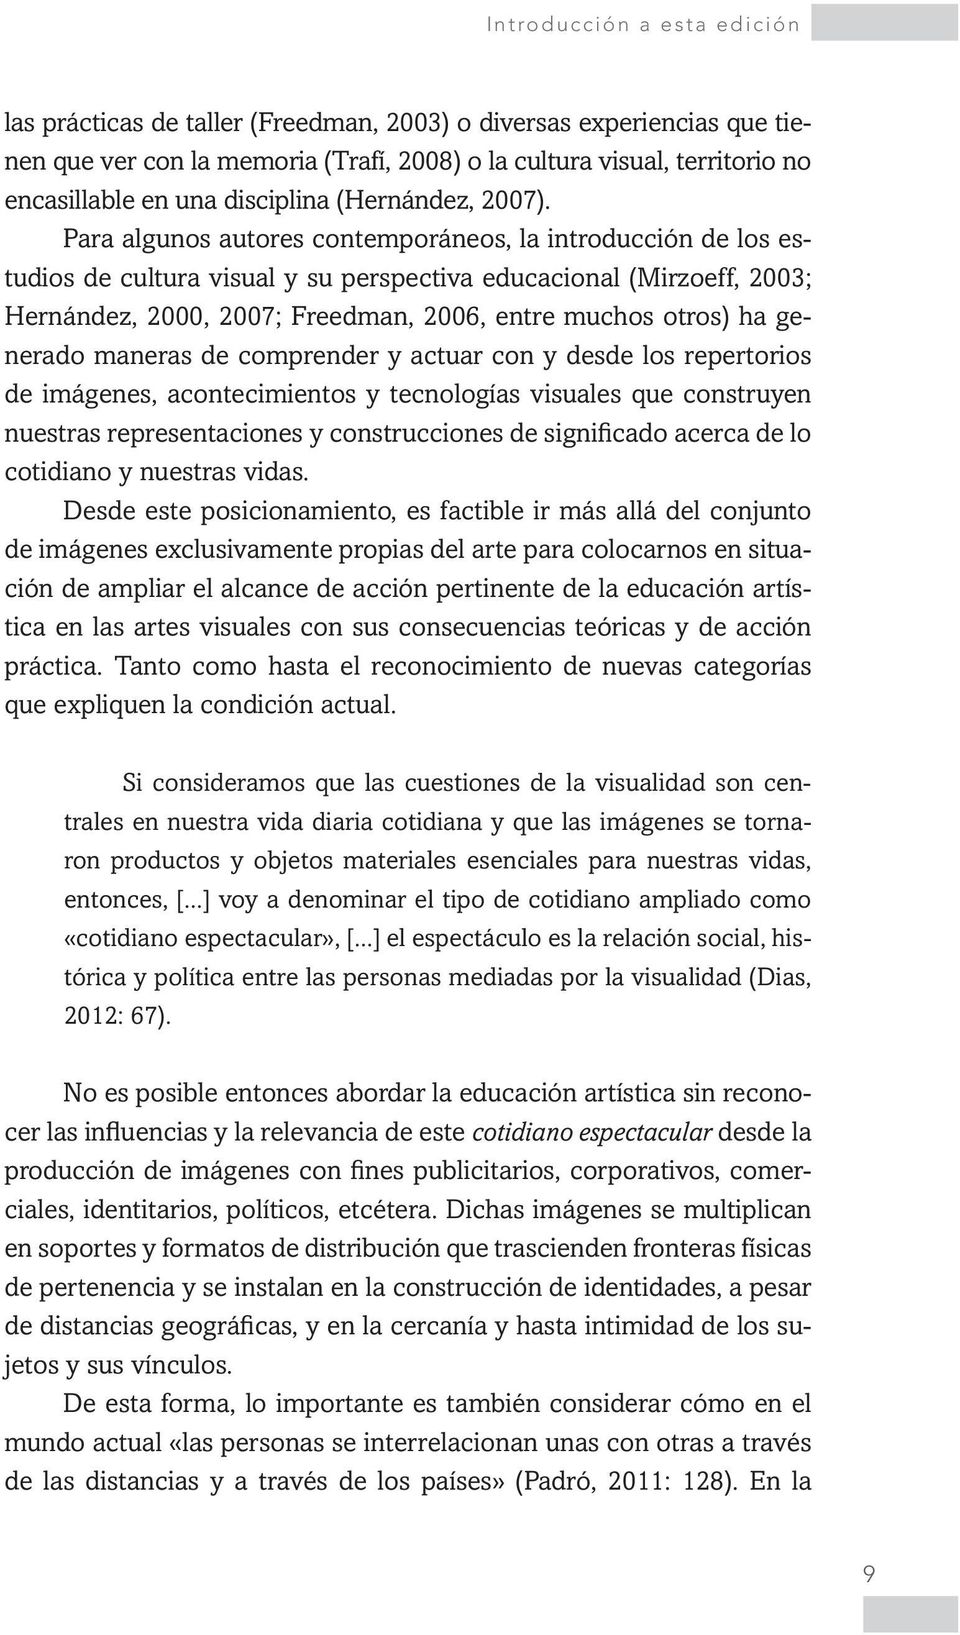 Para algunos autores contemporáneos, la introducción de los estudios de cultura visual y su perspectiva educacional (Mirzoeff, 2003; Hernández, 2000, 2007; Freedman, 2006, entre muchos otros) ha